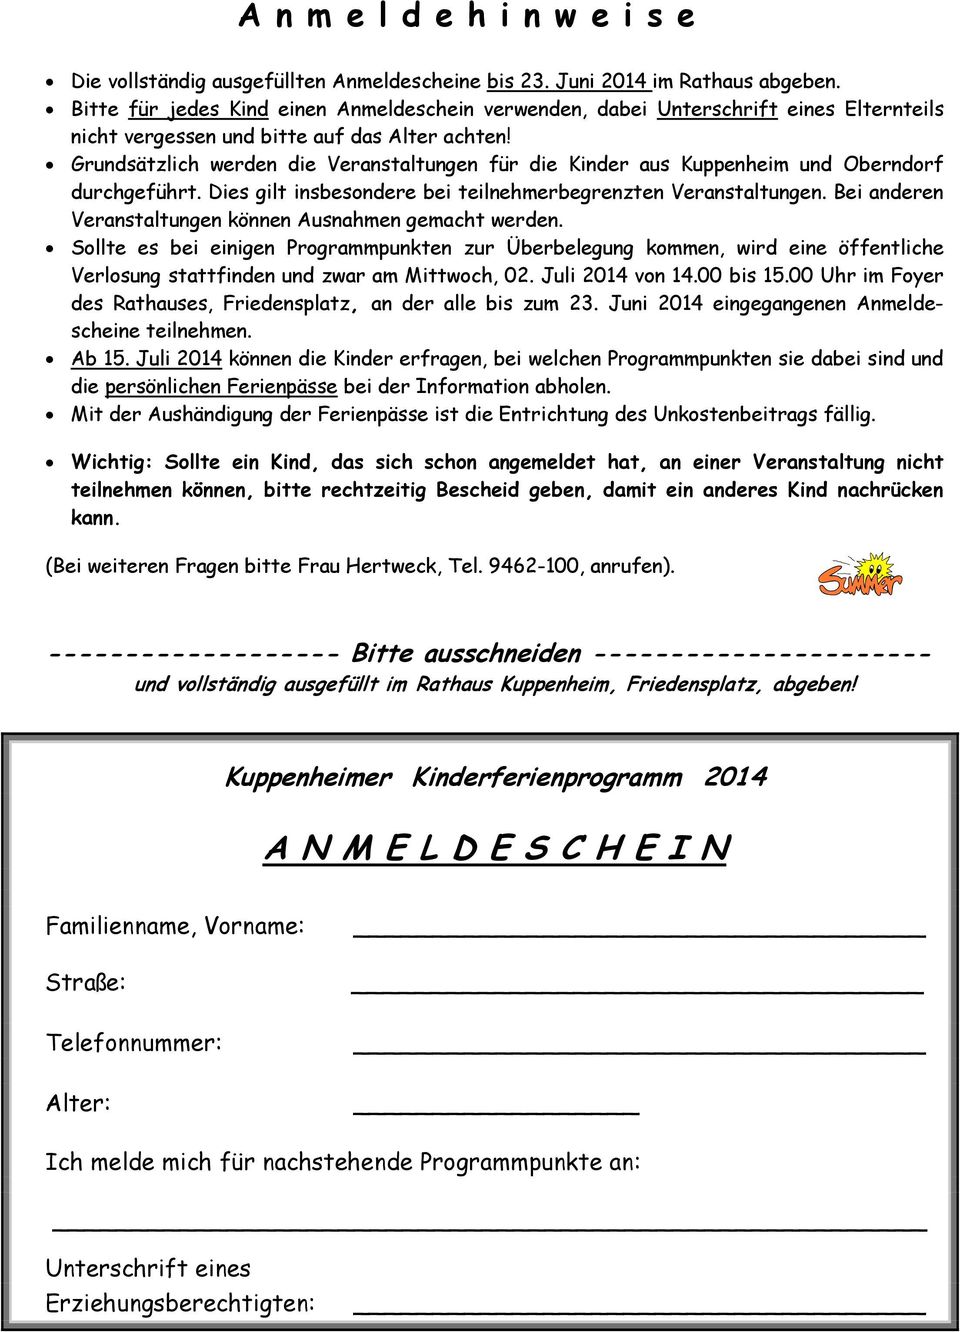 Grundsätzlich werden die Veranstaltungen für die Kinder aus Kuppenheim und Oberndorf durchgeführt. Dies gilt insbesondere bei teilnehmerbegrenzten Veranstaltungen.